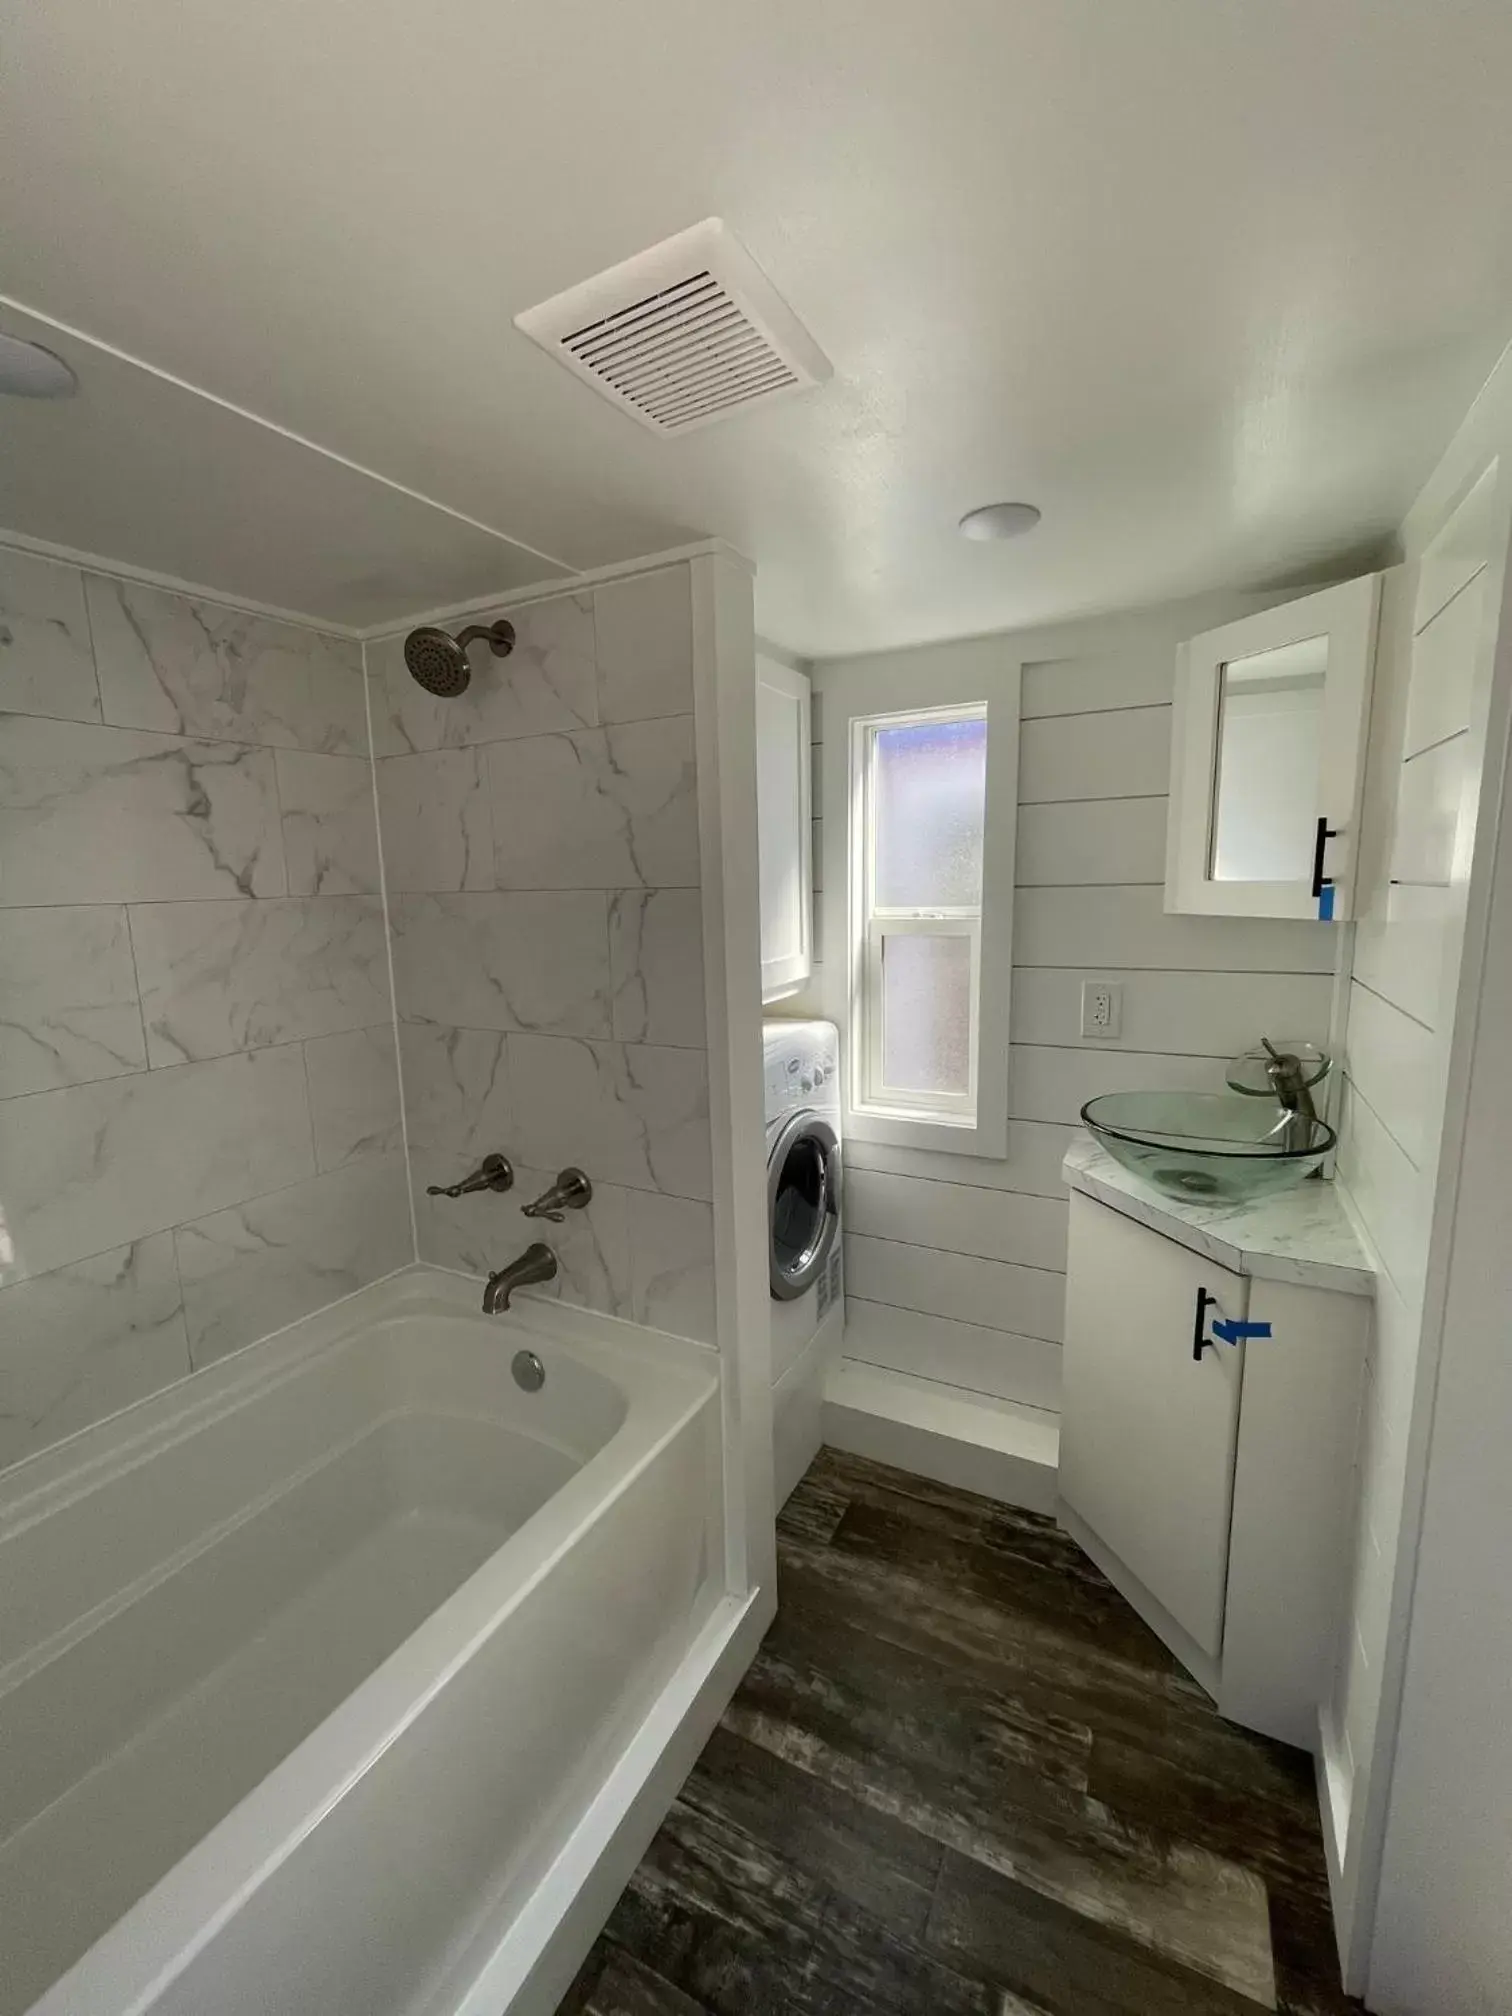 Shower, Bathroom in Teton Peaks Resort